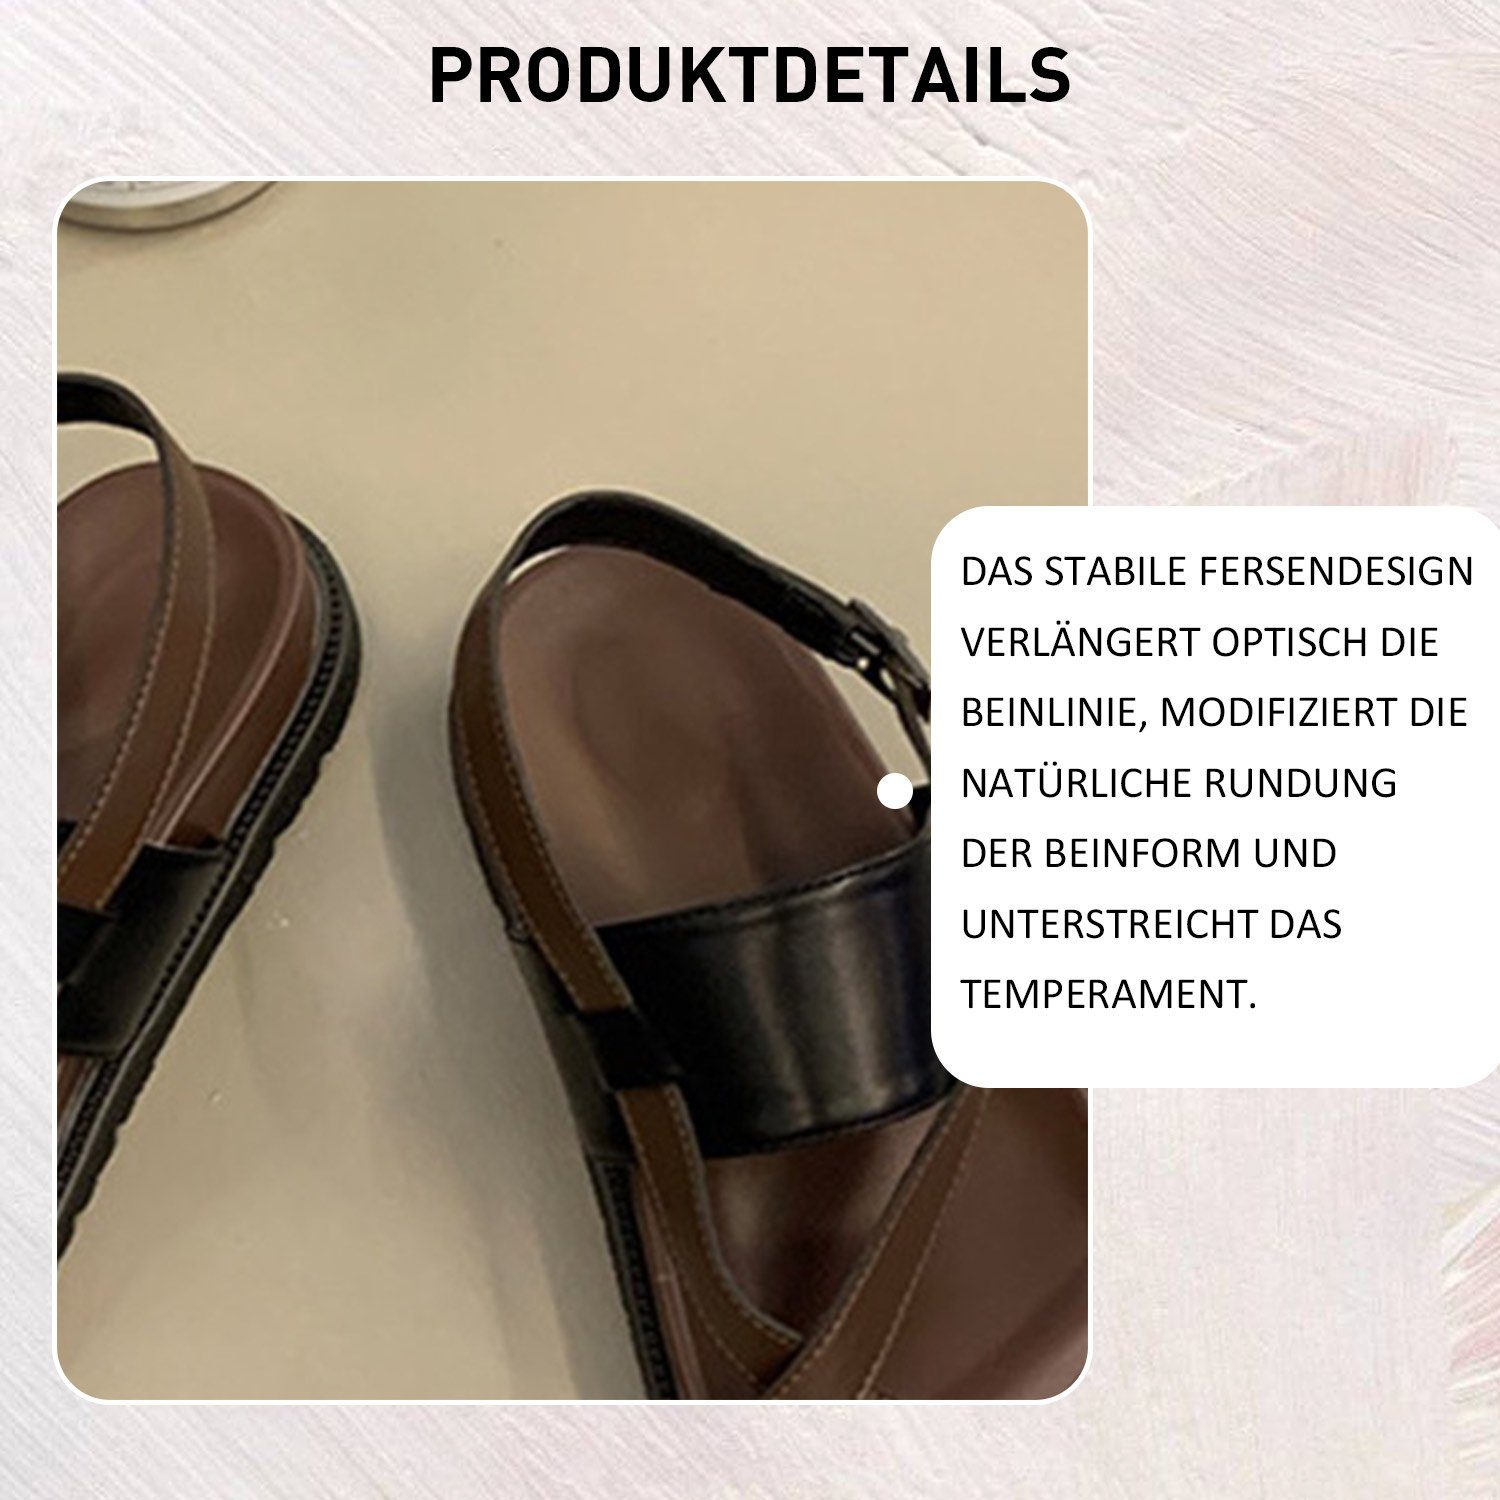 Damen Schwarz Zehentrenner Slides Sandale Sandalen Sommer Daisred Braun Outdoorsandale Pantolette und